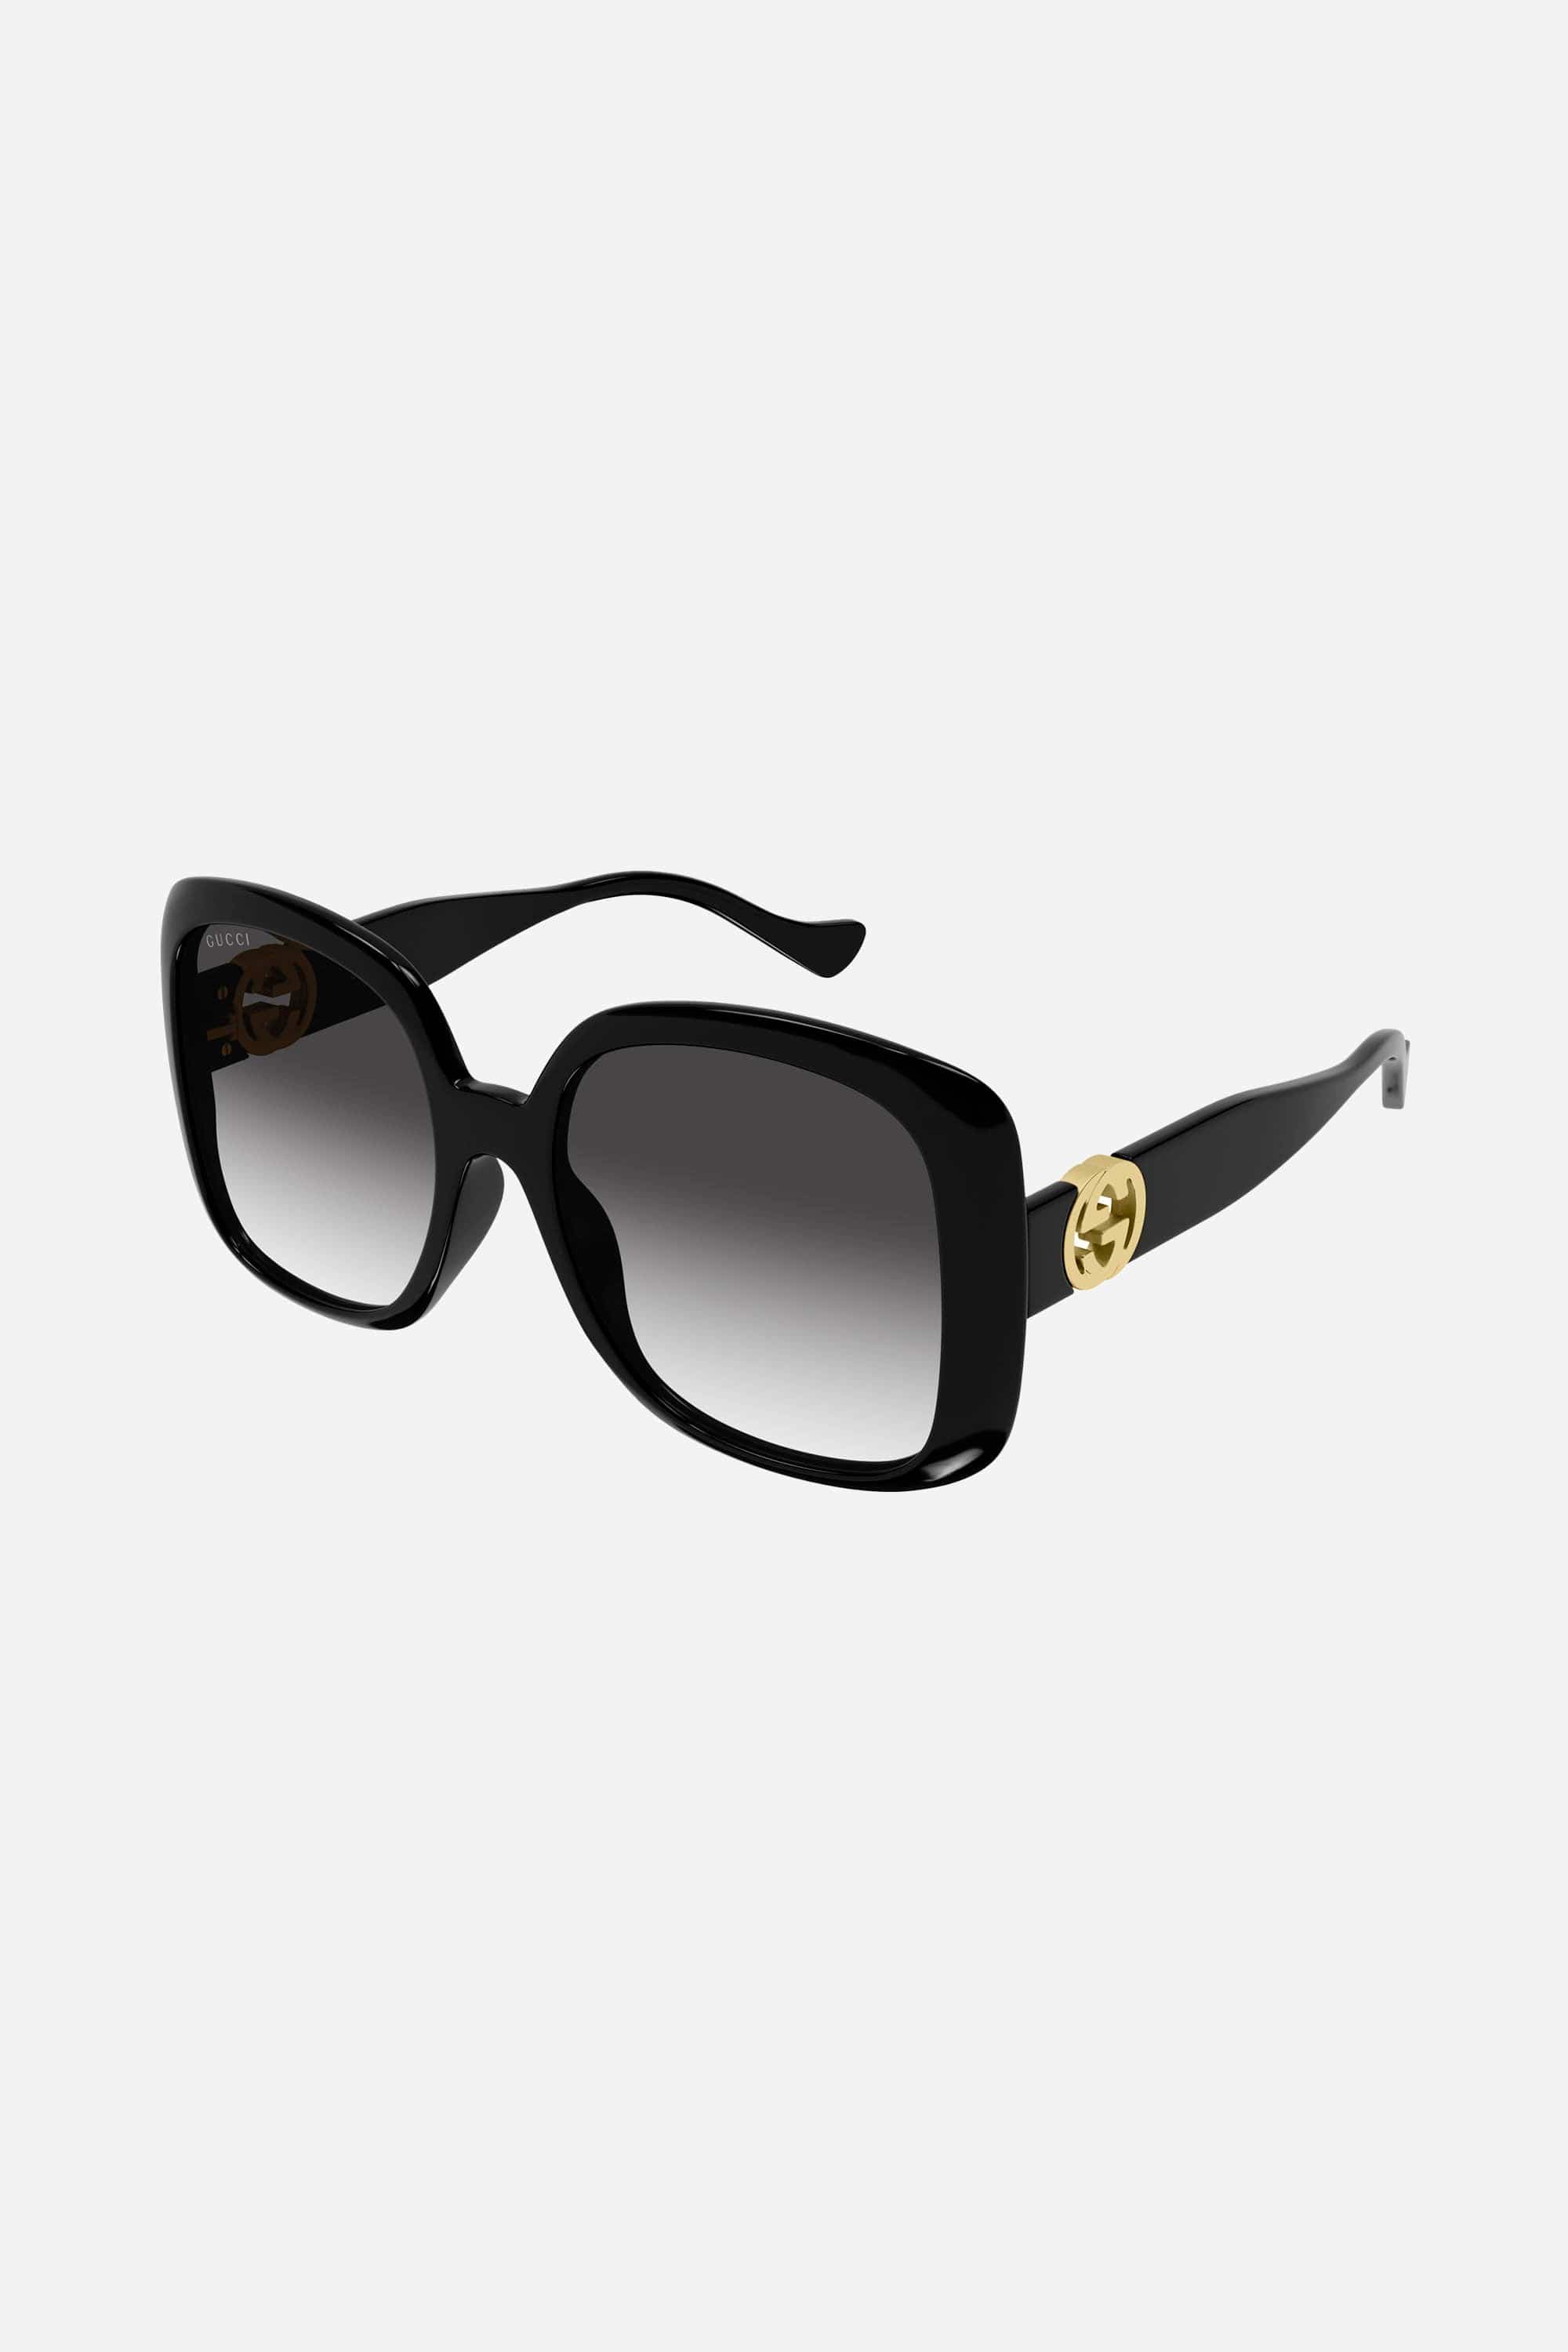 Gucci butterfly black sunglasses - Eyewear Club